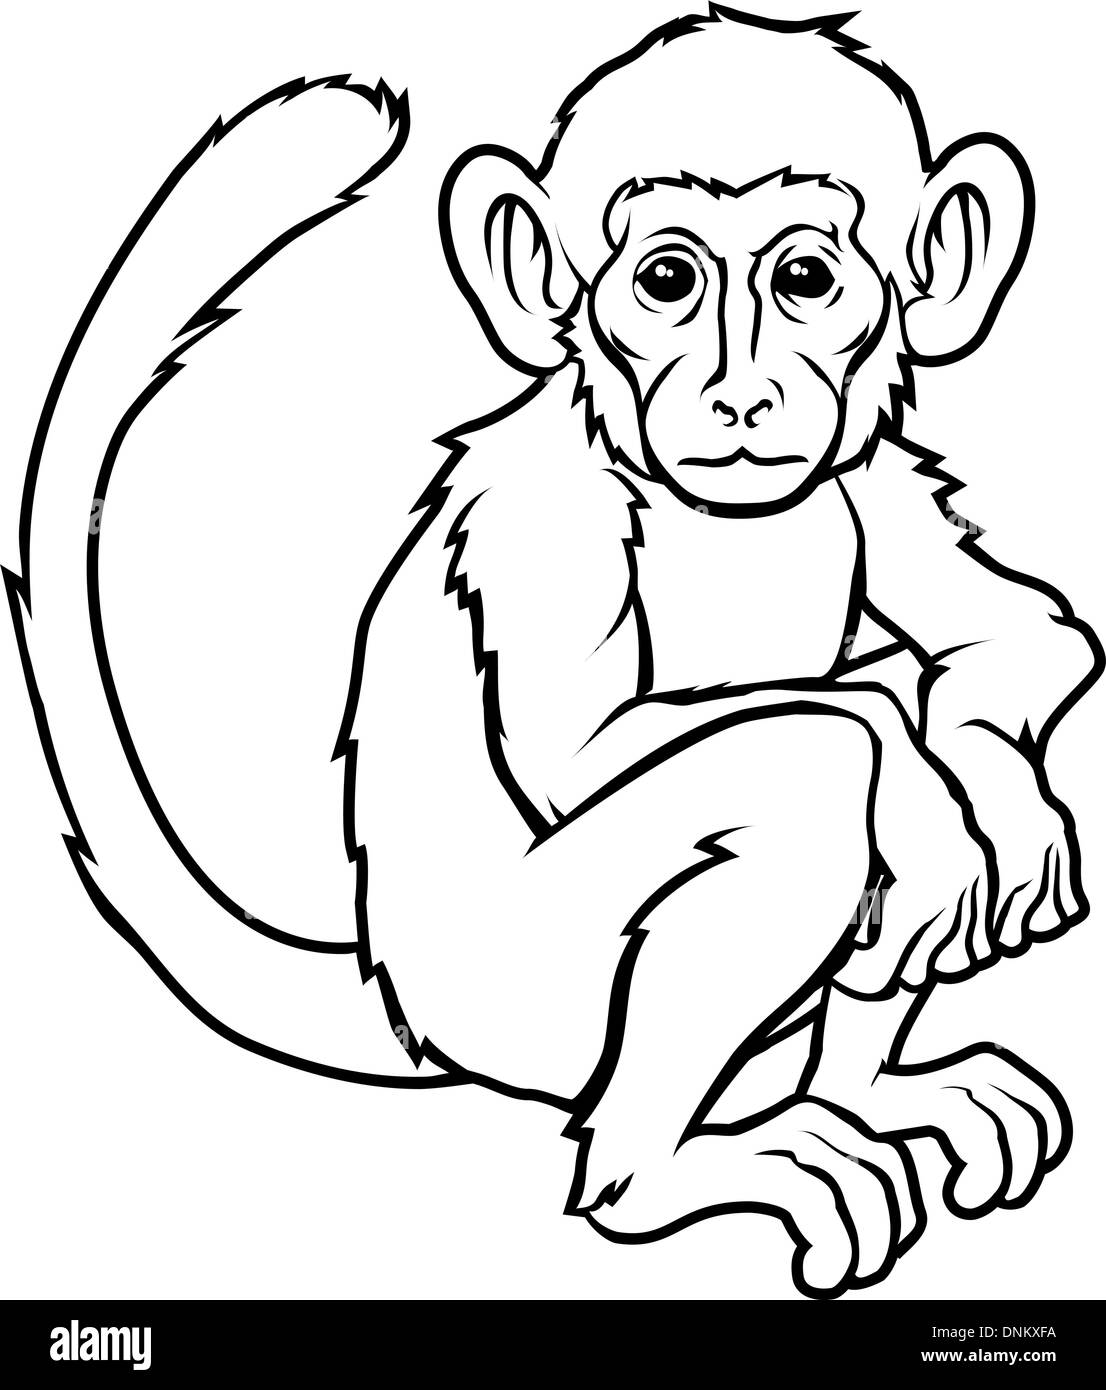 Une illustration d'un singe singe stylisé peut-être un tatouage Illustration de Vecteur